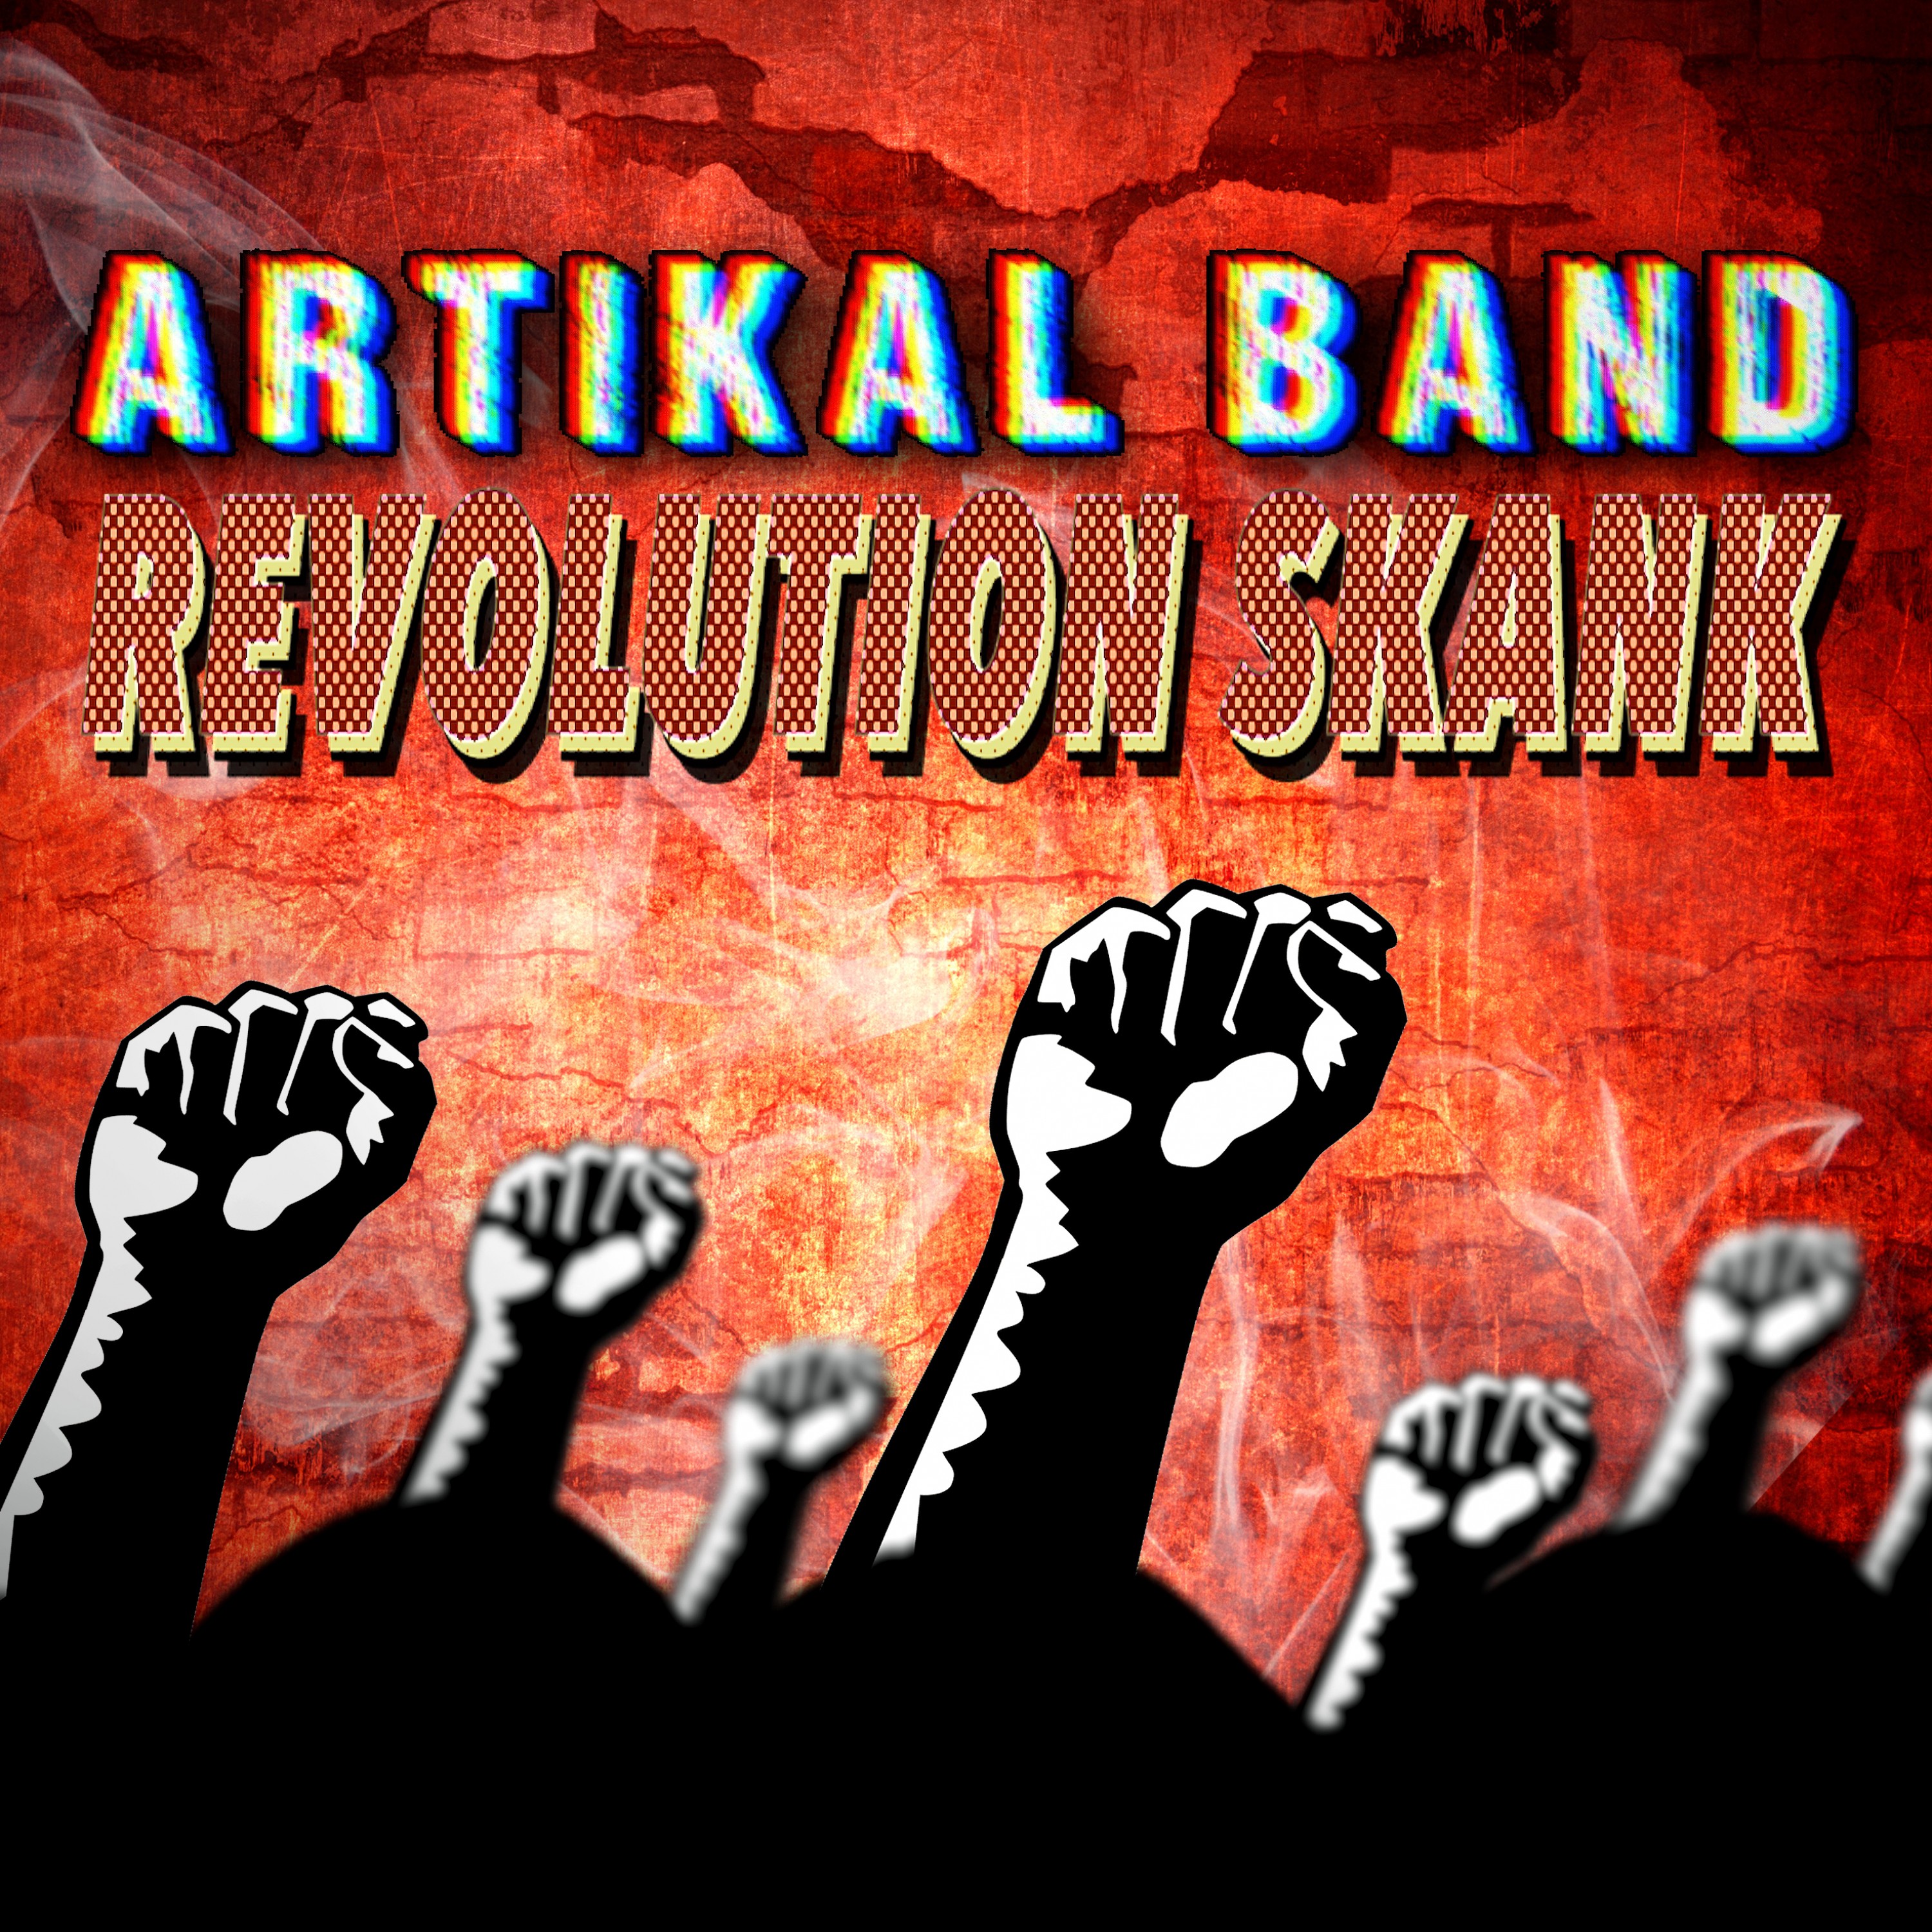 Revolution Skank